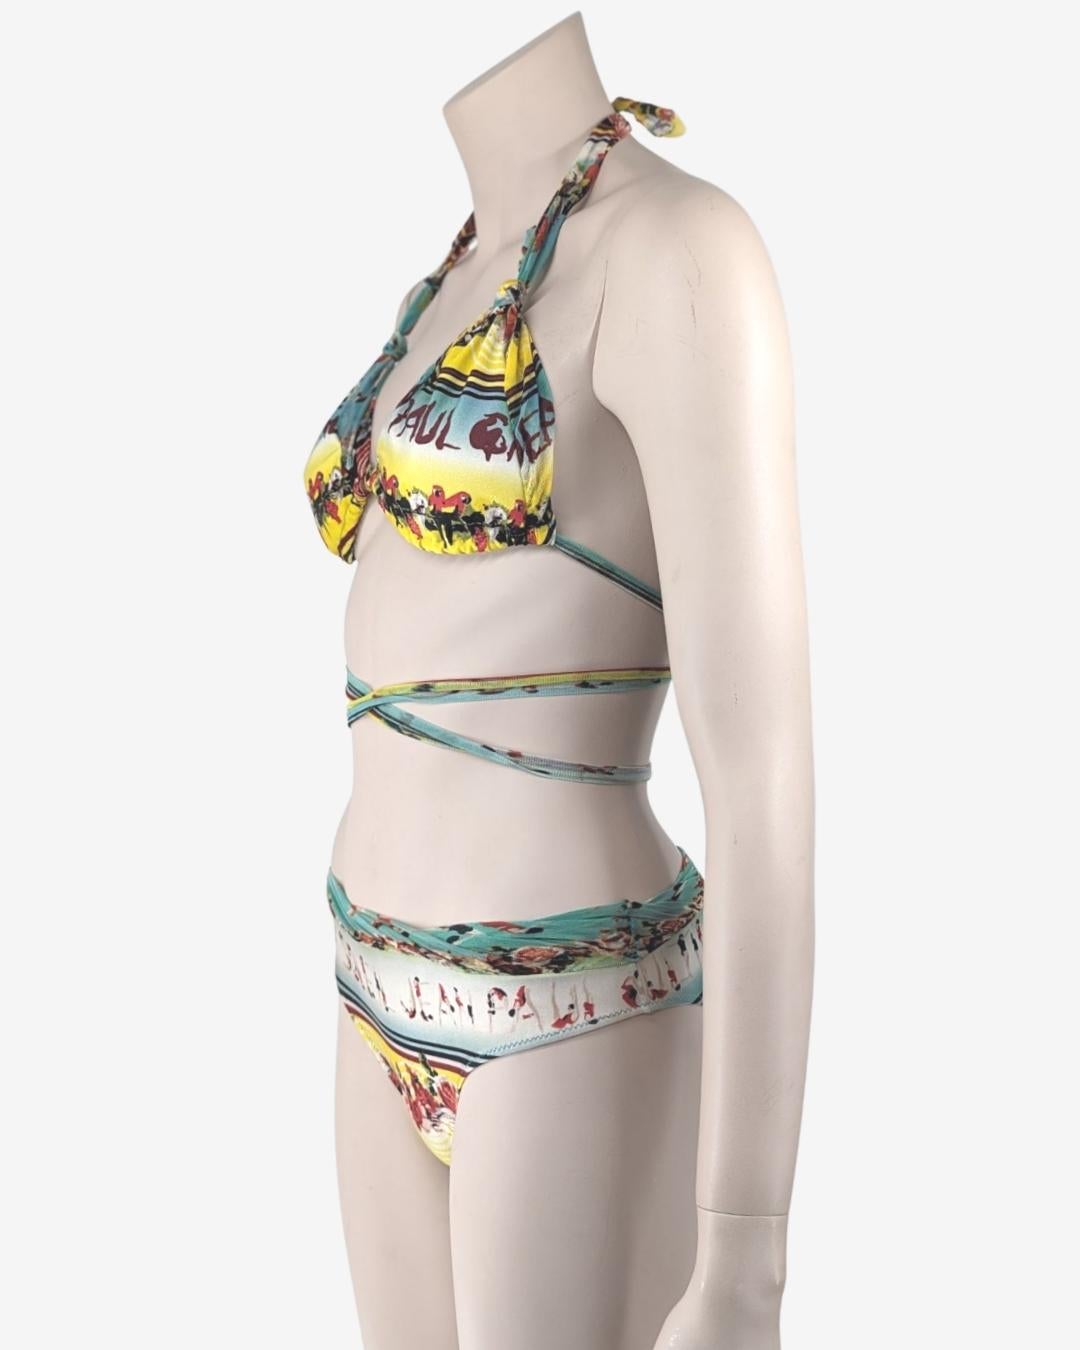 Jean Paul Gaultier Soleil Badeanzug zweiteilig
Erstaunliche Details aus Blumendruck, Mädchen im Badeanzug und Papageien.

Größe S